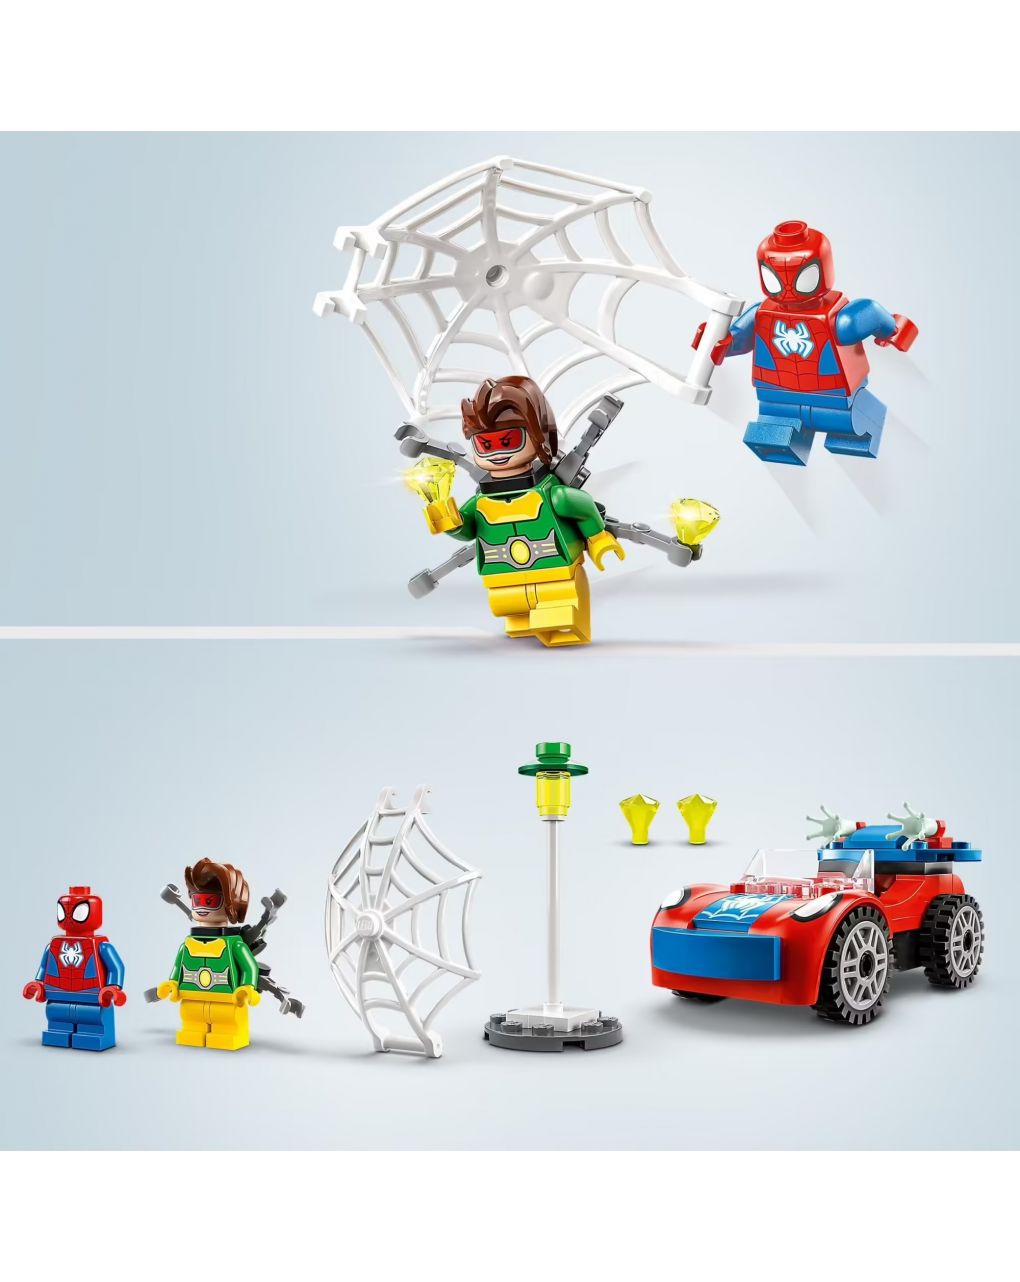 Spider-man e doc ock's car - spidey e os seus fantásticos amigos - lego marvel - Spidey